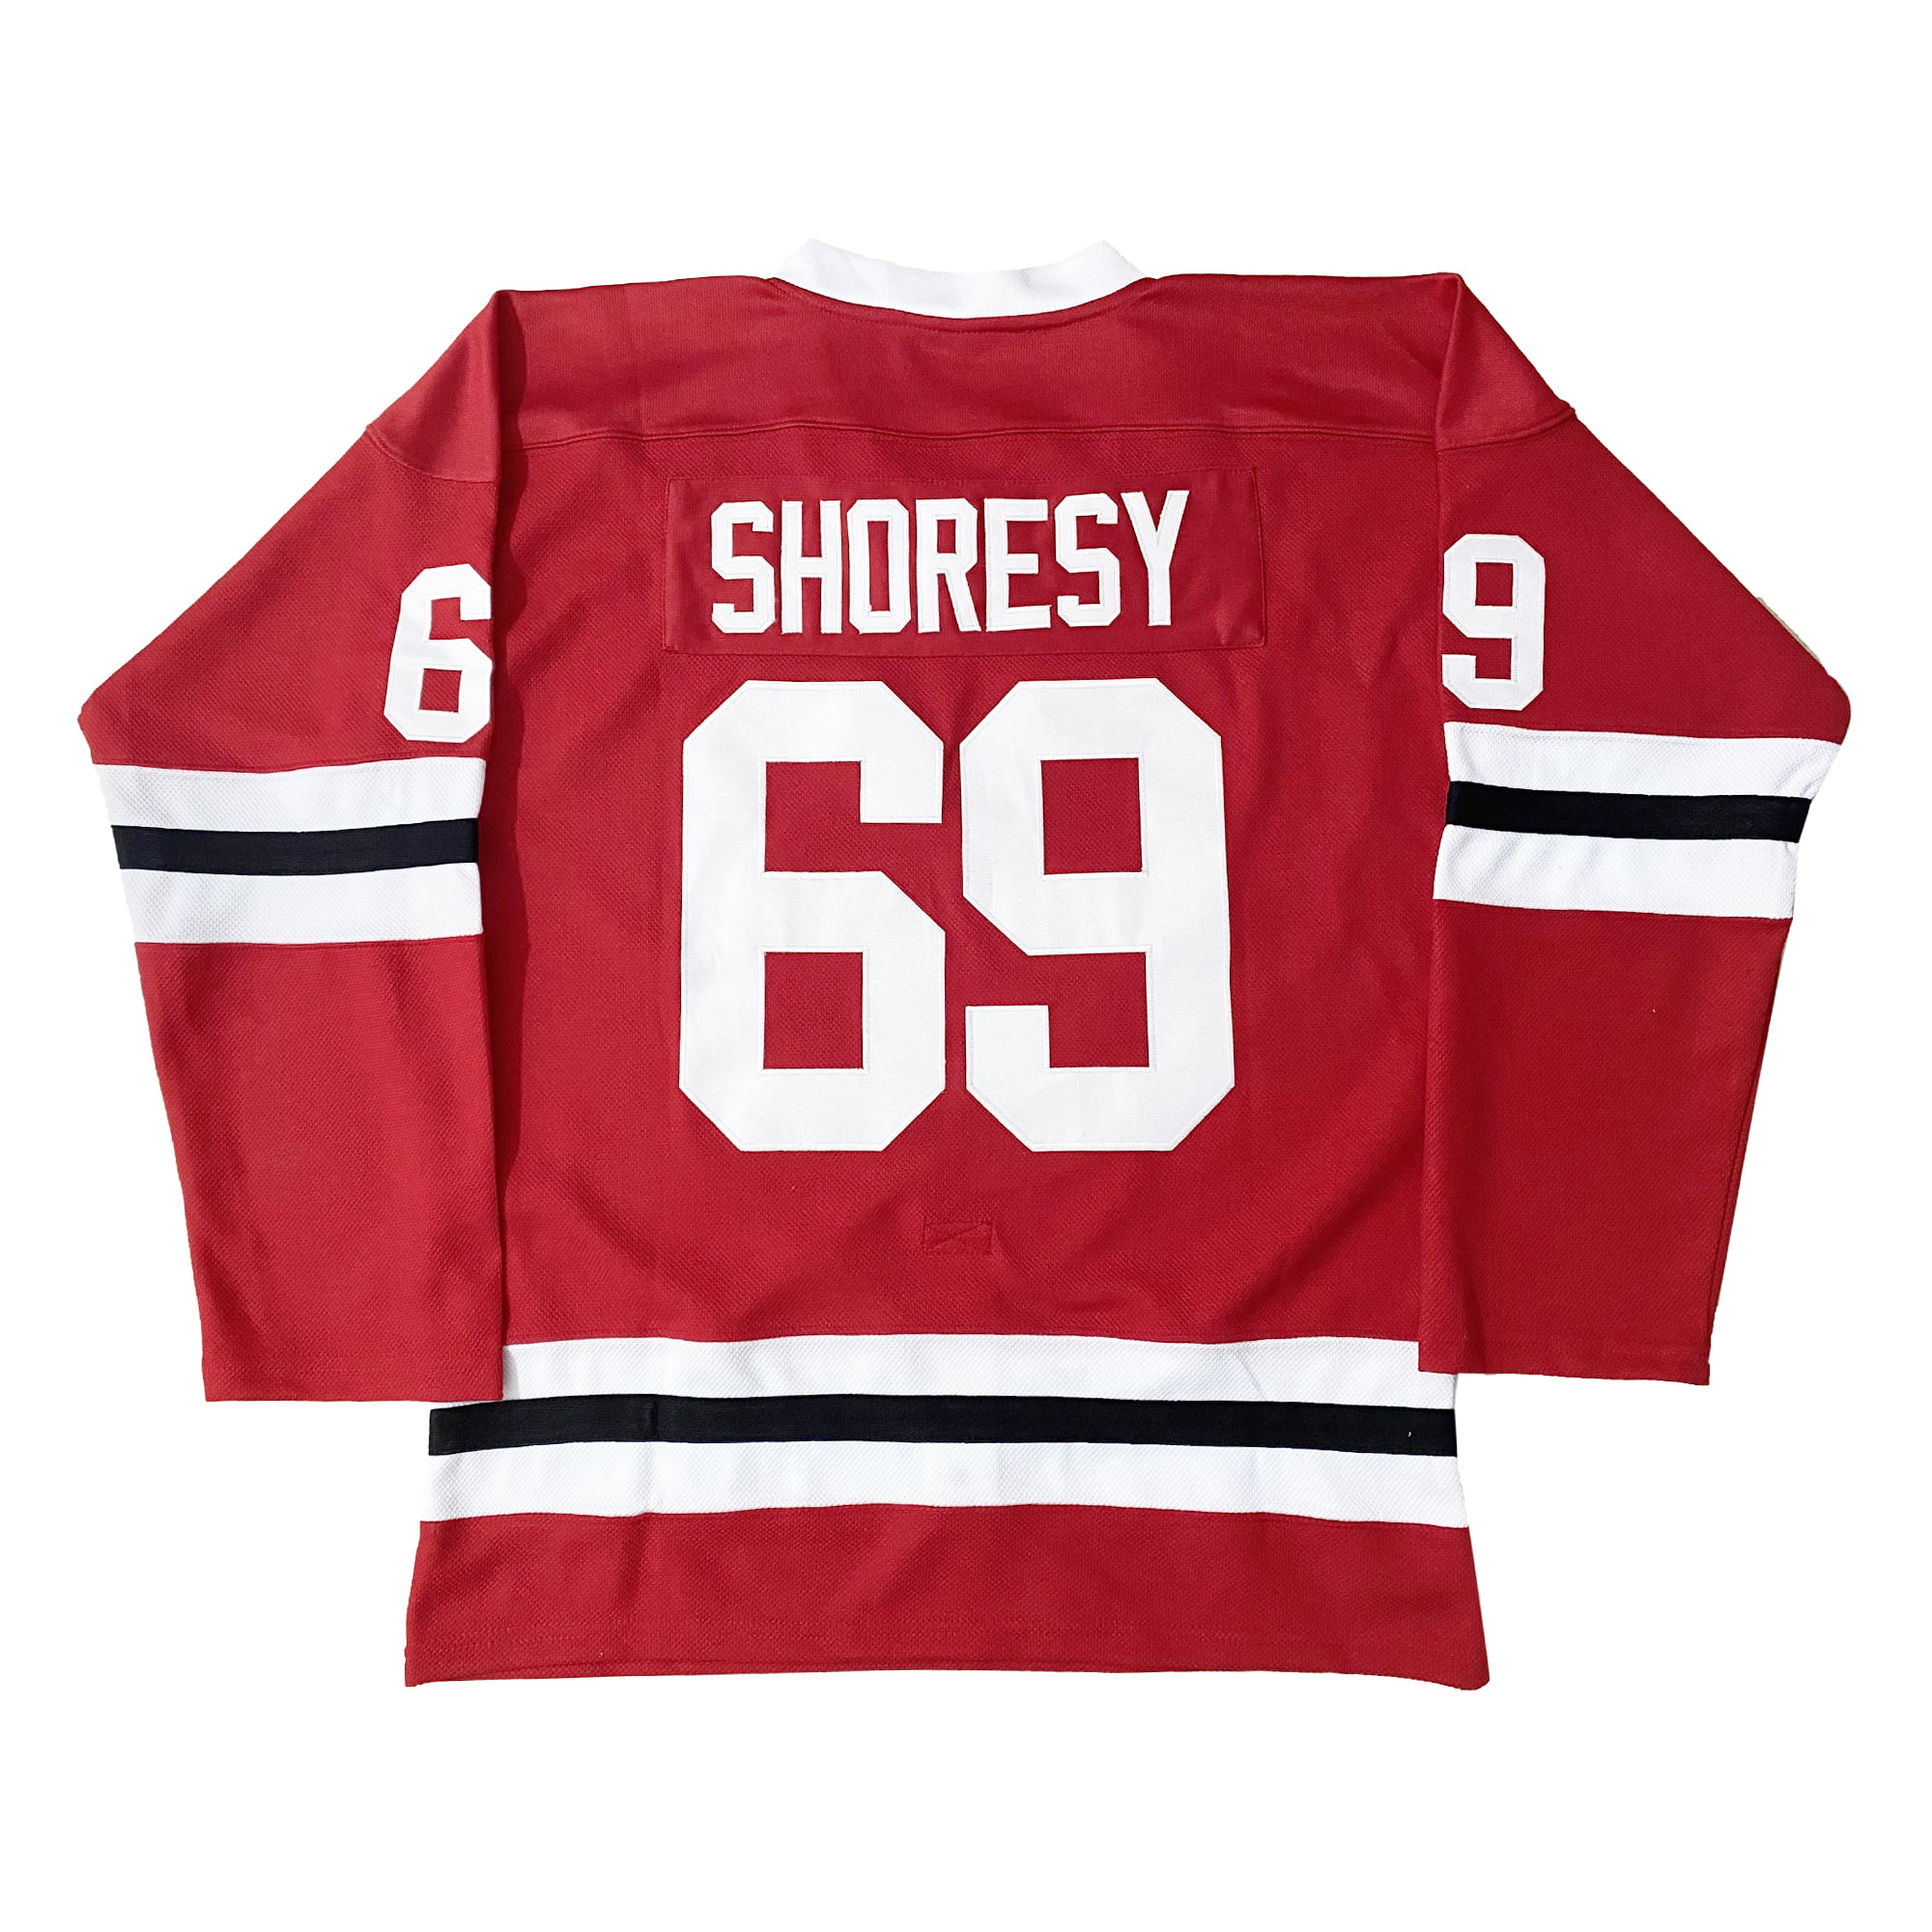 Shoresy #69 Letterkenny Shamrocks Hockey Jersey TV Show Team